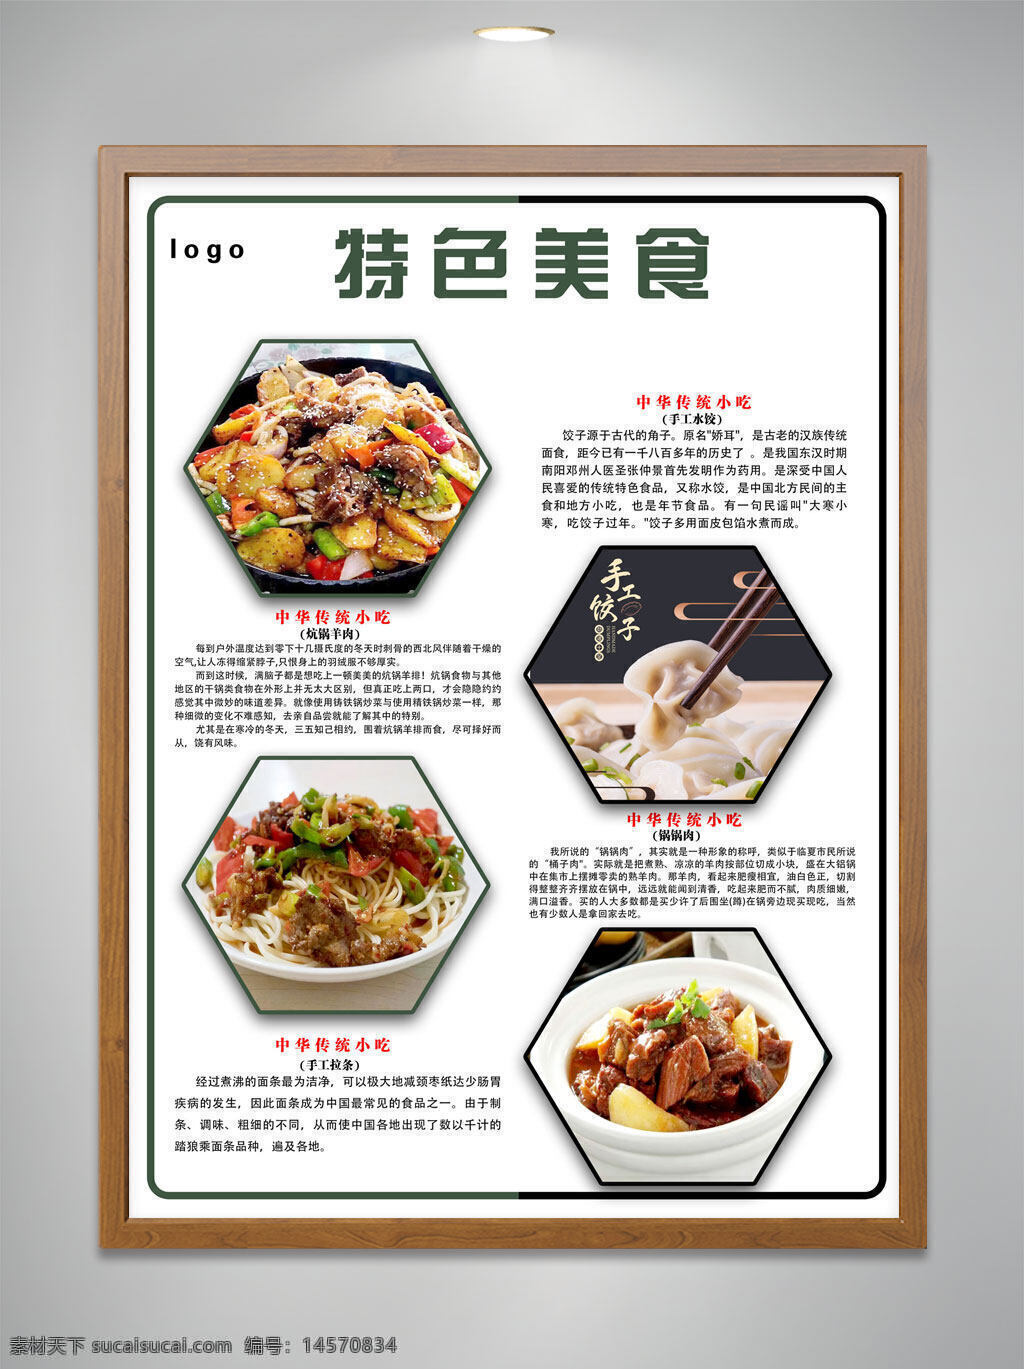 手工水饺 锅锅肉 炕锅羊排 美食简介 特色美食 传统小吃